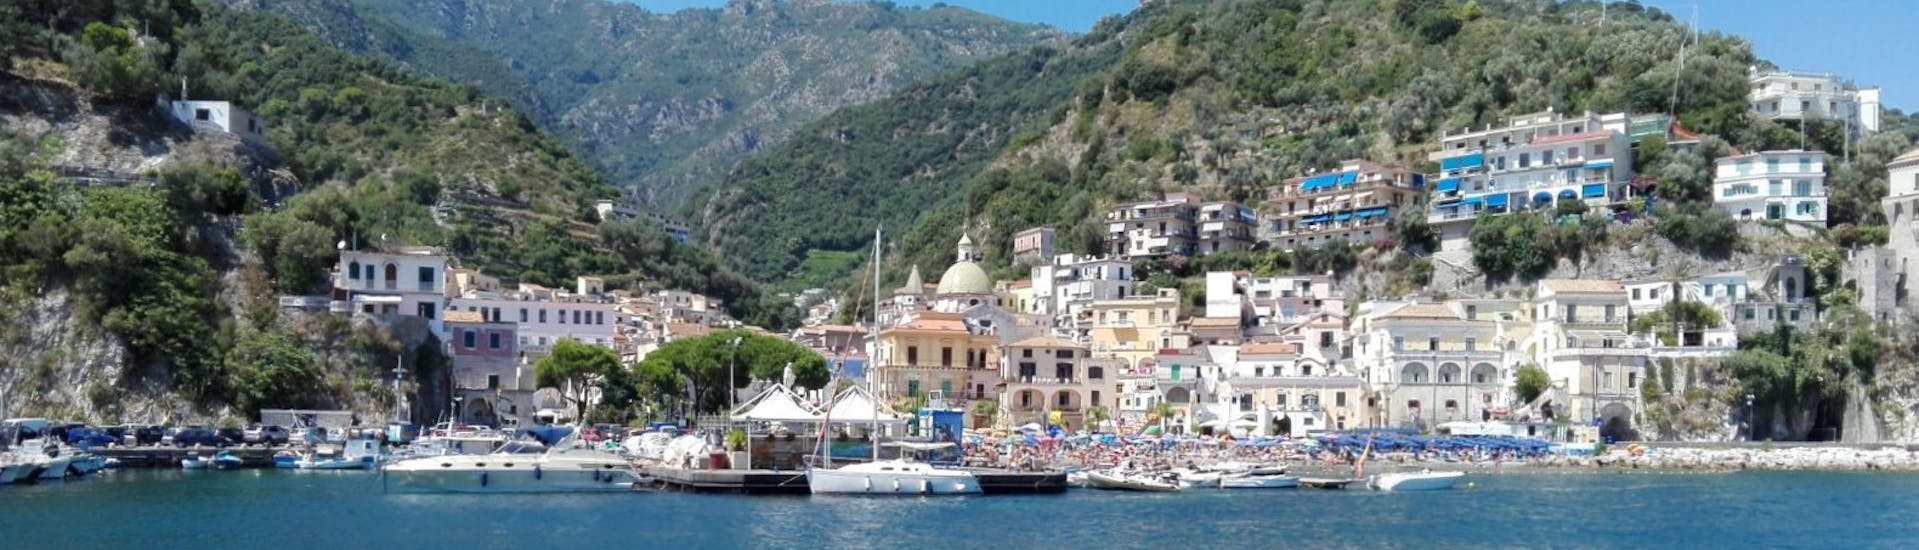 La costa de Sorrento vista desde el barco durante el paseo privado en barco de Sorrento a Amalfi con aperitivo y buceo con The Morgans.